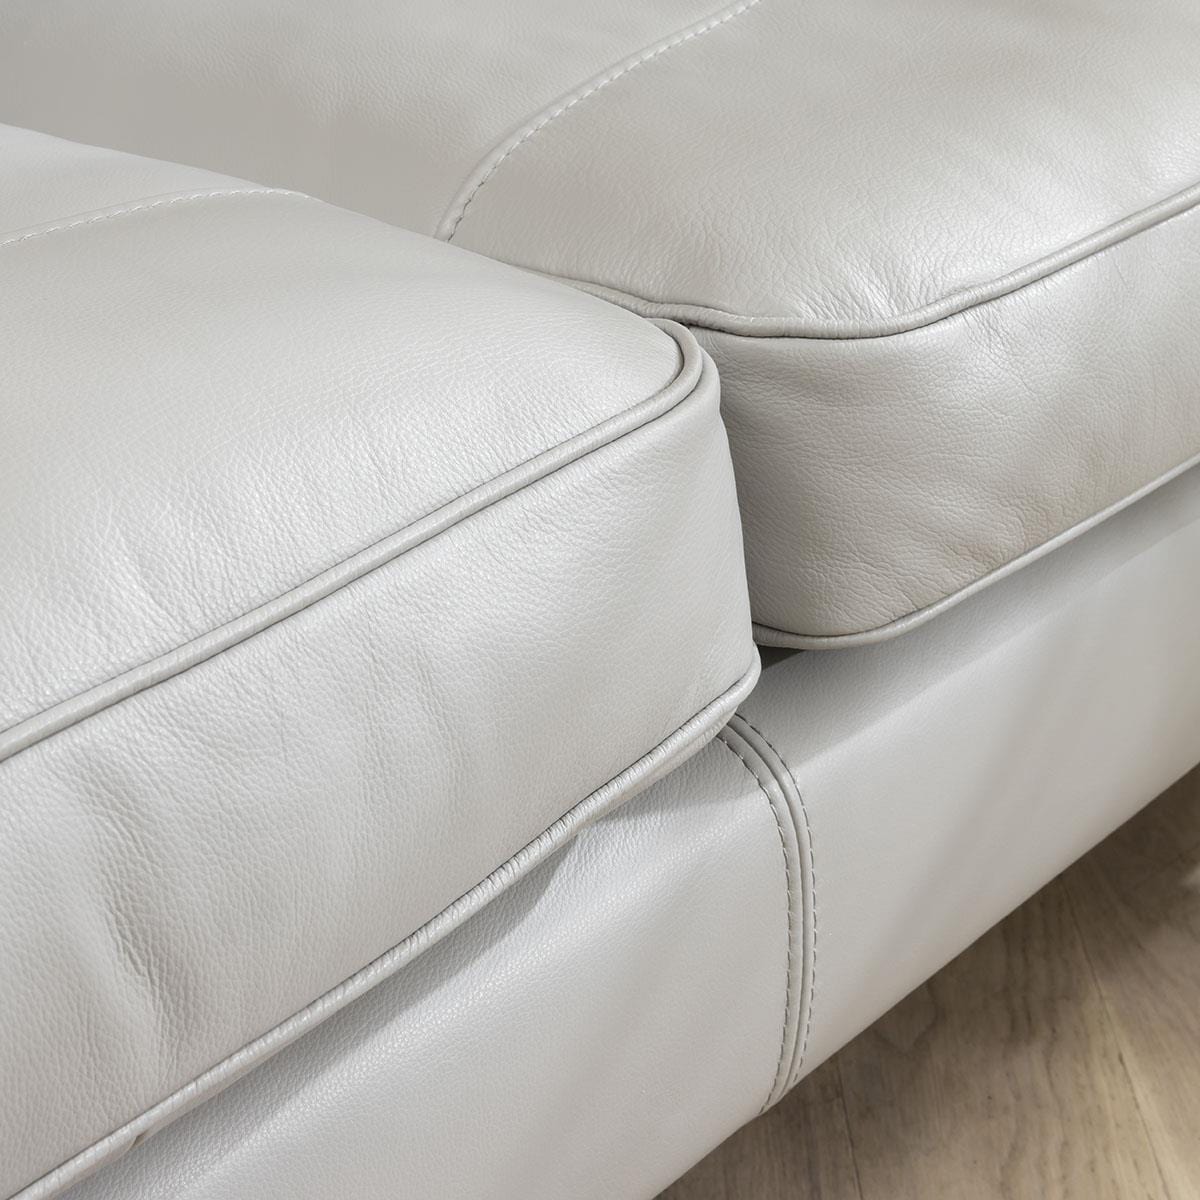 Quatropi Quatropi 3 Seater Premium Modern Sofa - Real Leather Grey- 215cm In Stock